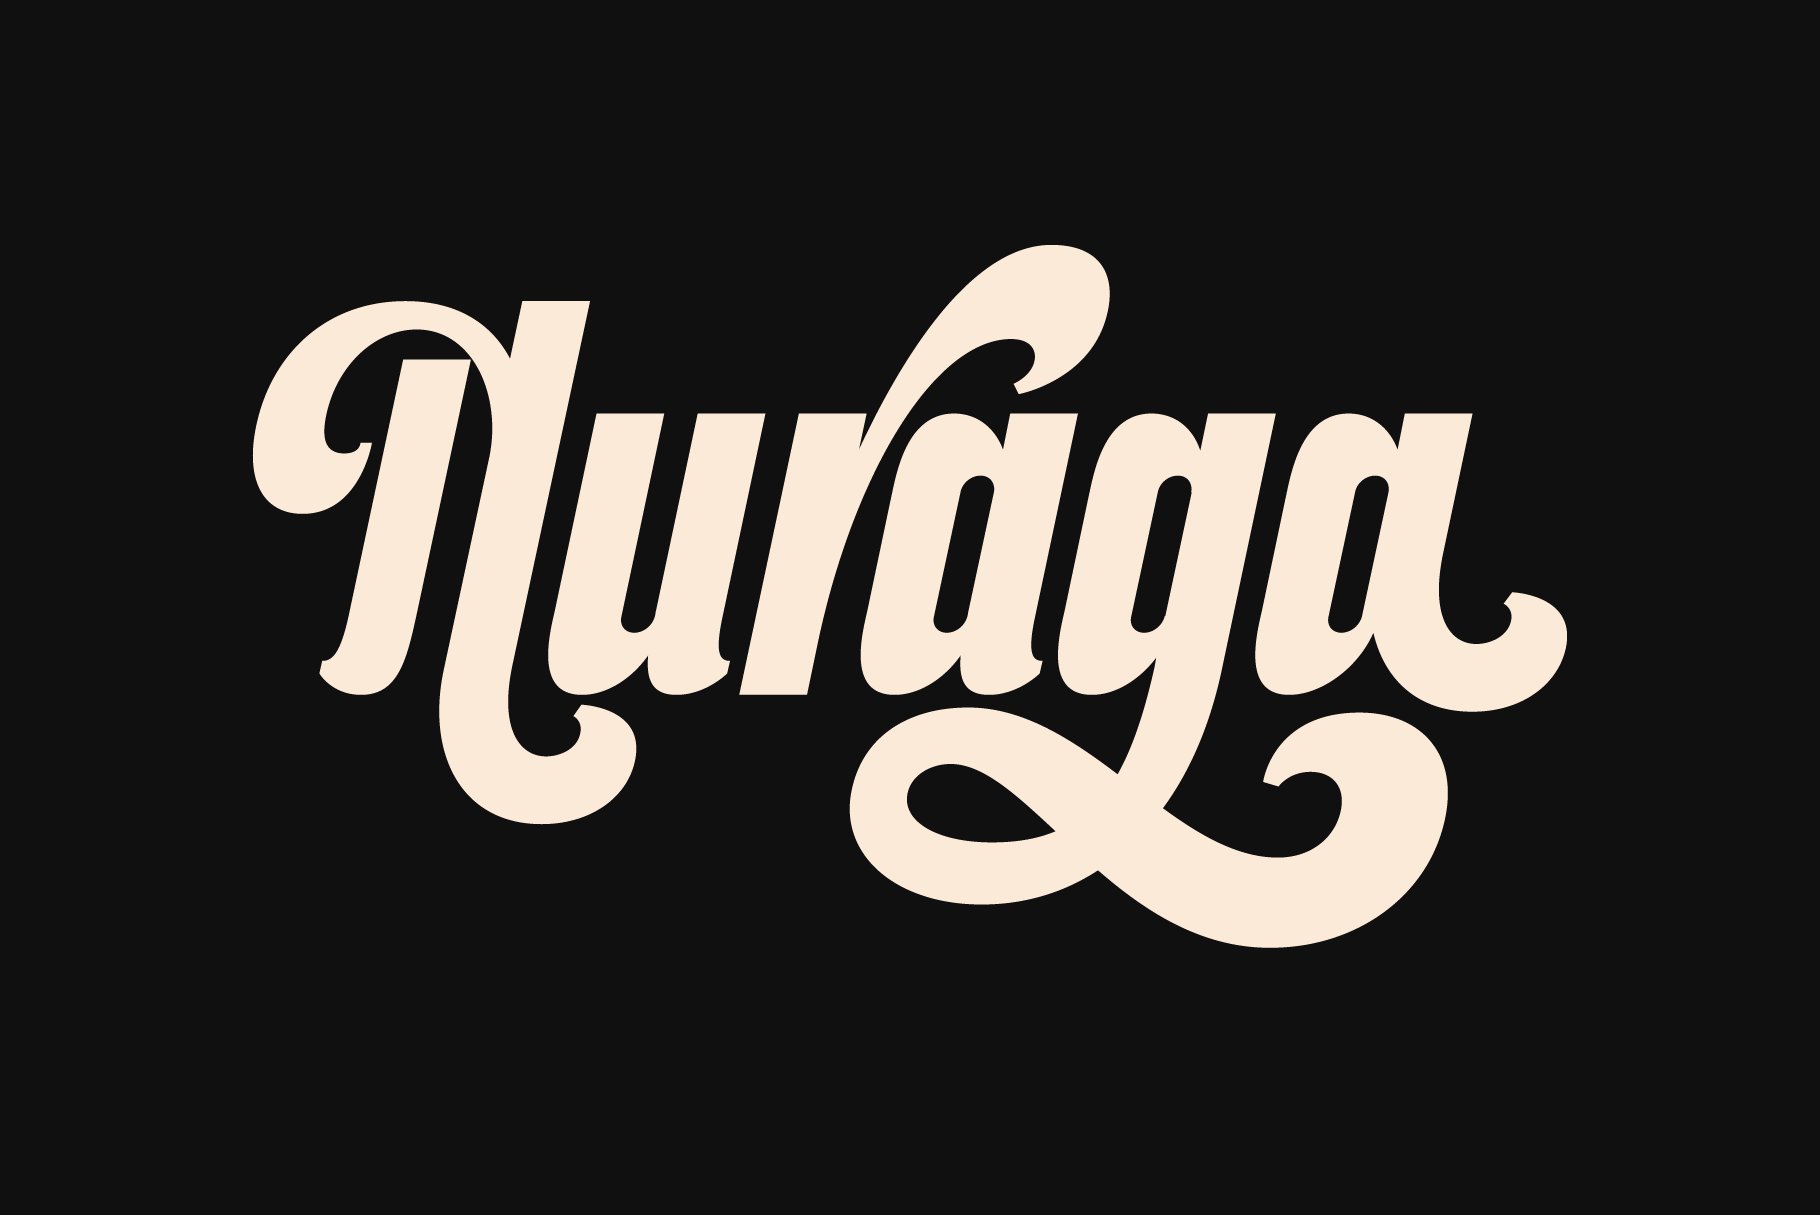 Nuraga preview image.